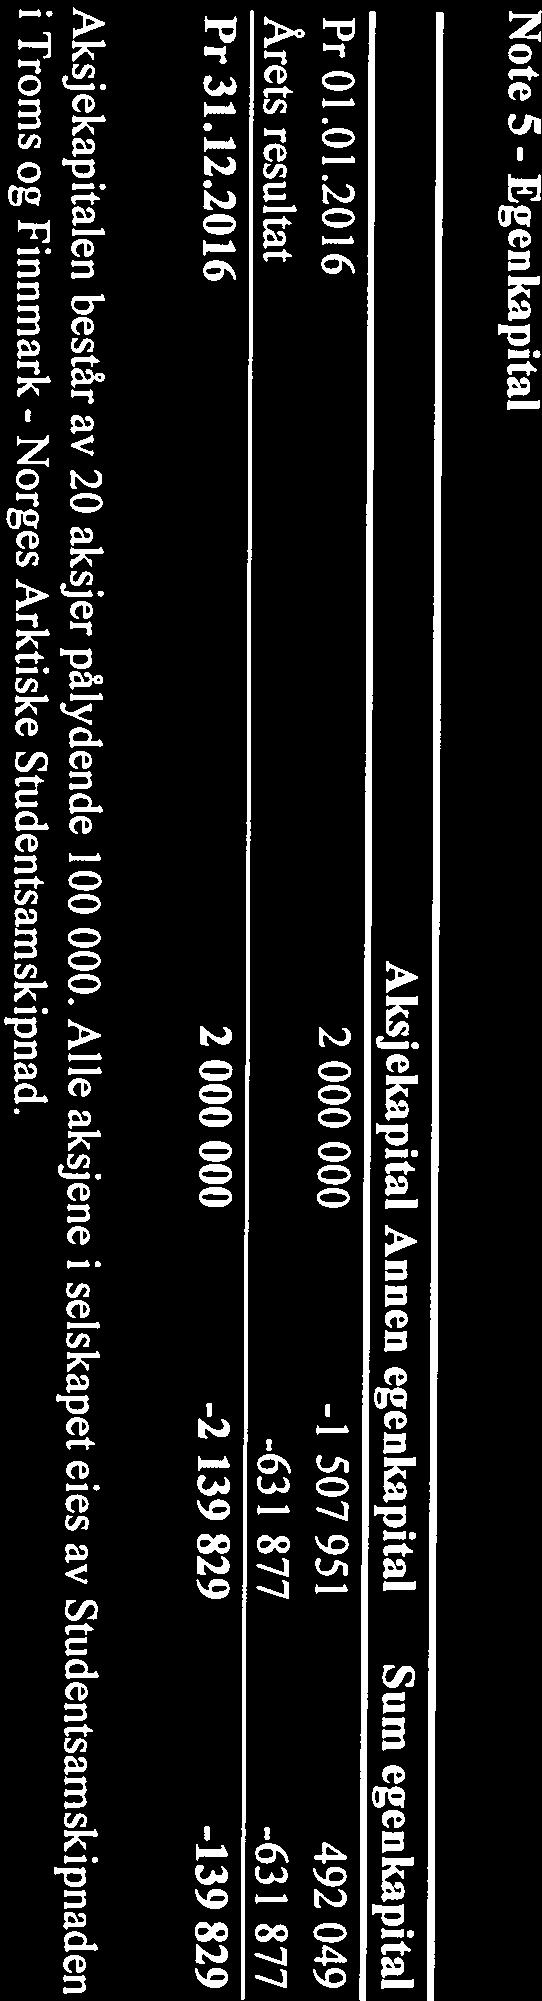 Pr 31.12.2016 Pr 01.01.2016 Årets resultat Note 4 - Note 5 - Egenkapital Bundne I posten bankinnskudd inngår bundne skattetrekk midler med kr 101 $11.